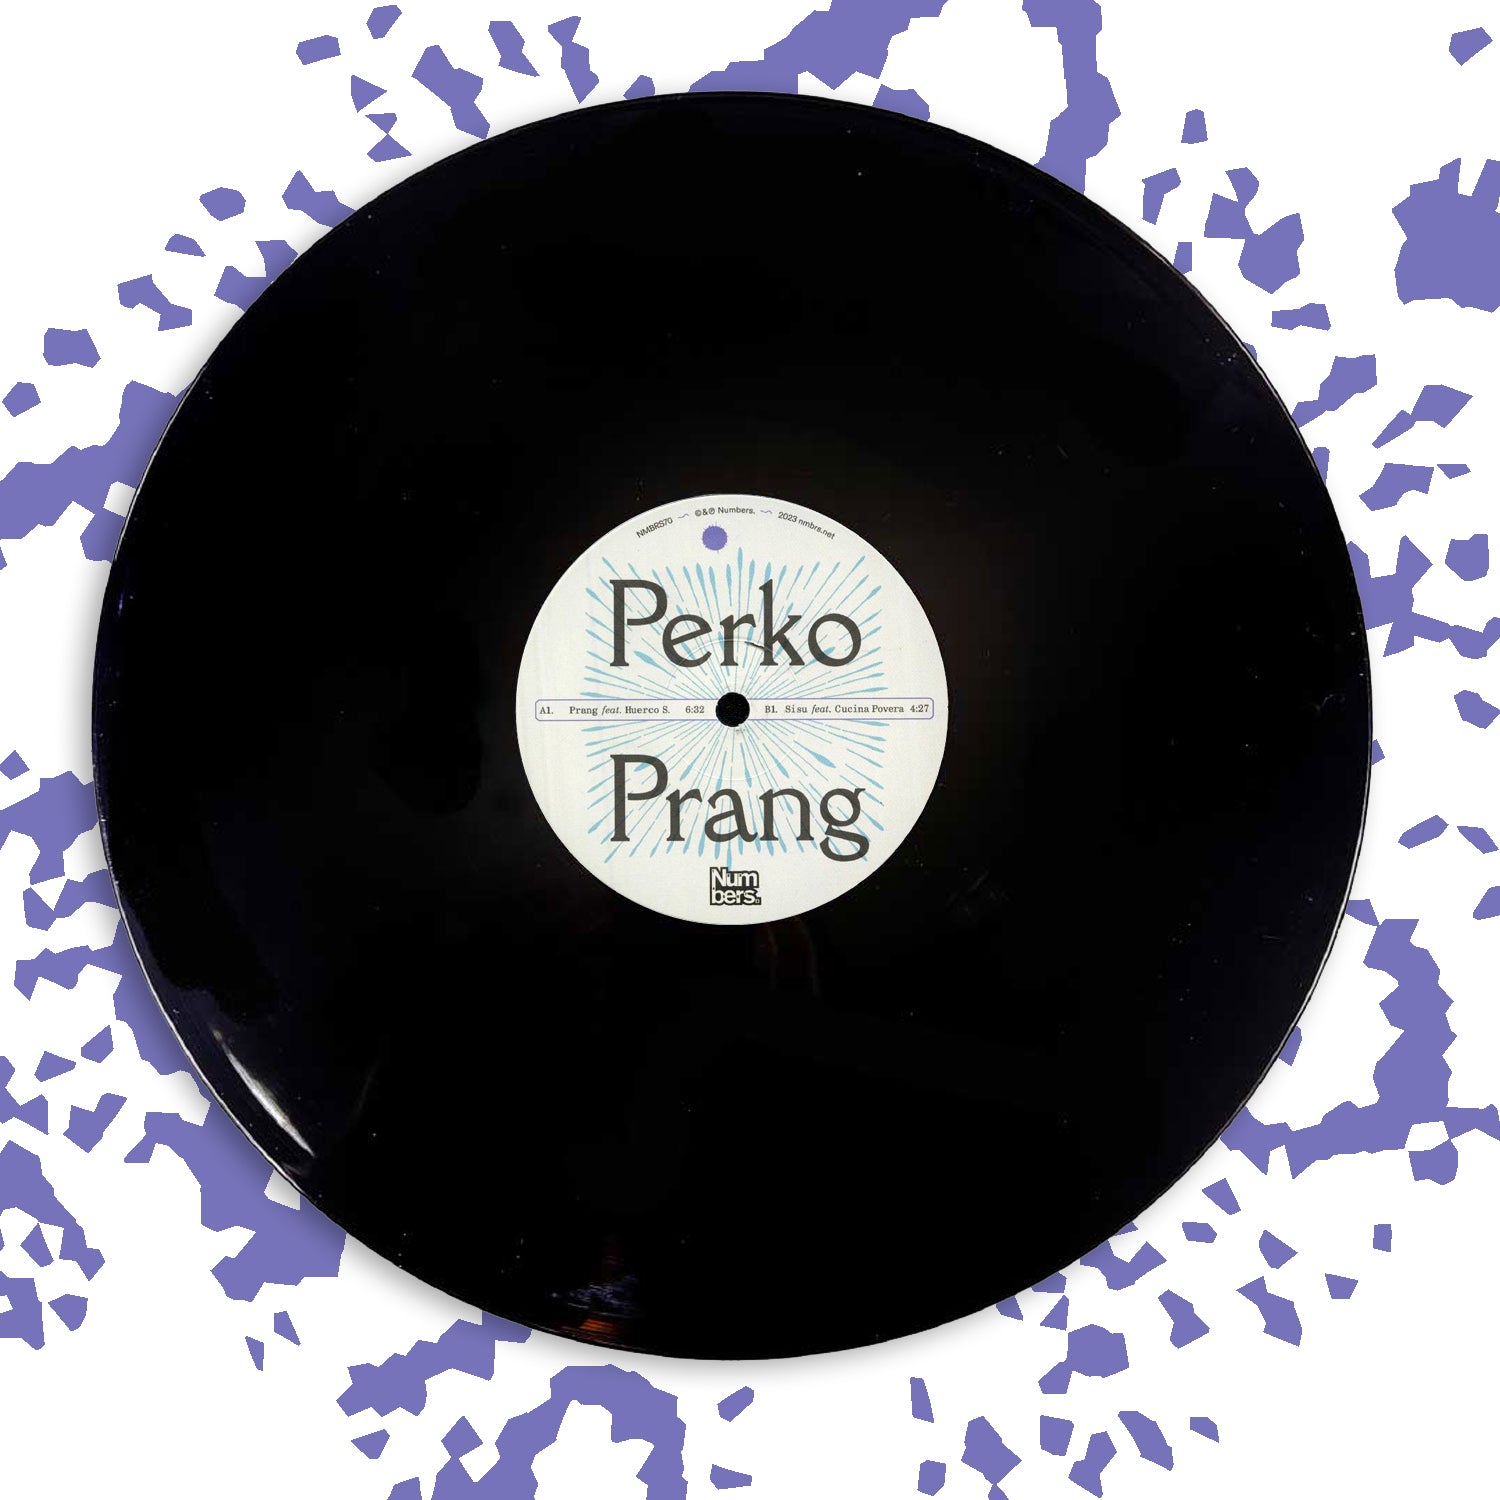 Perko - Prang